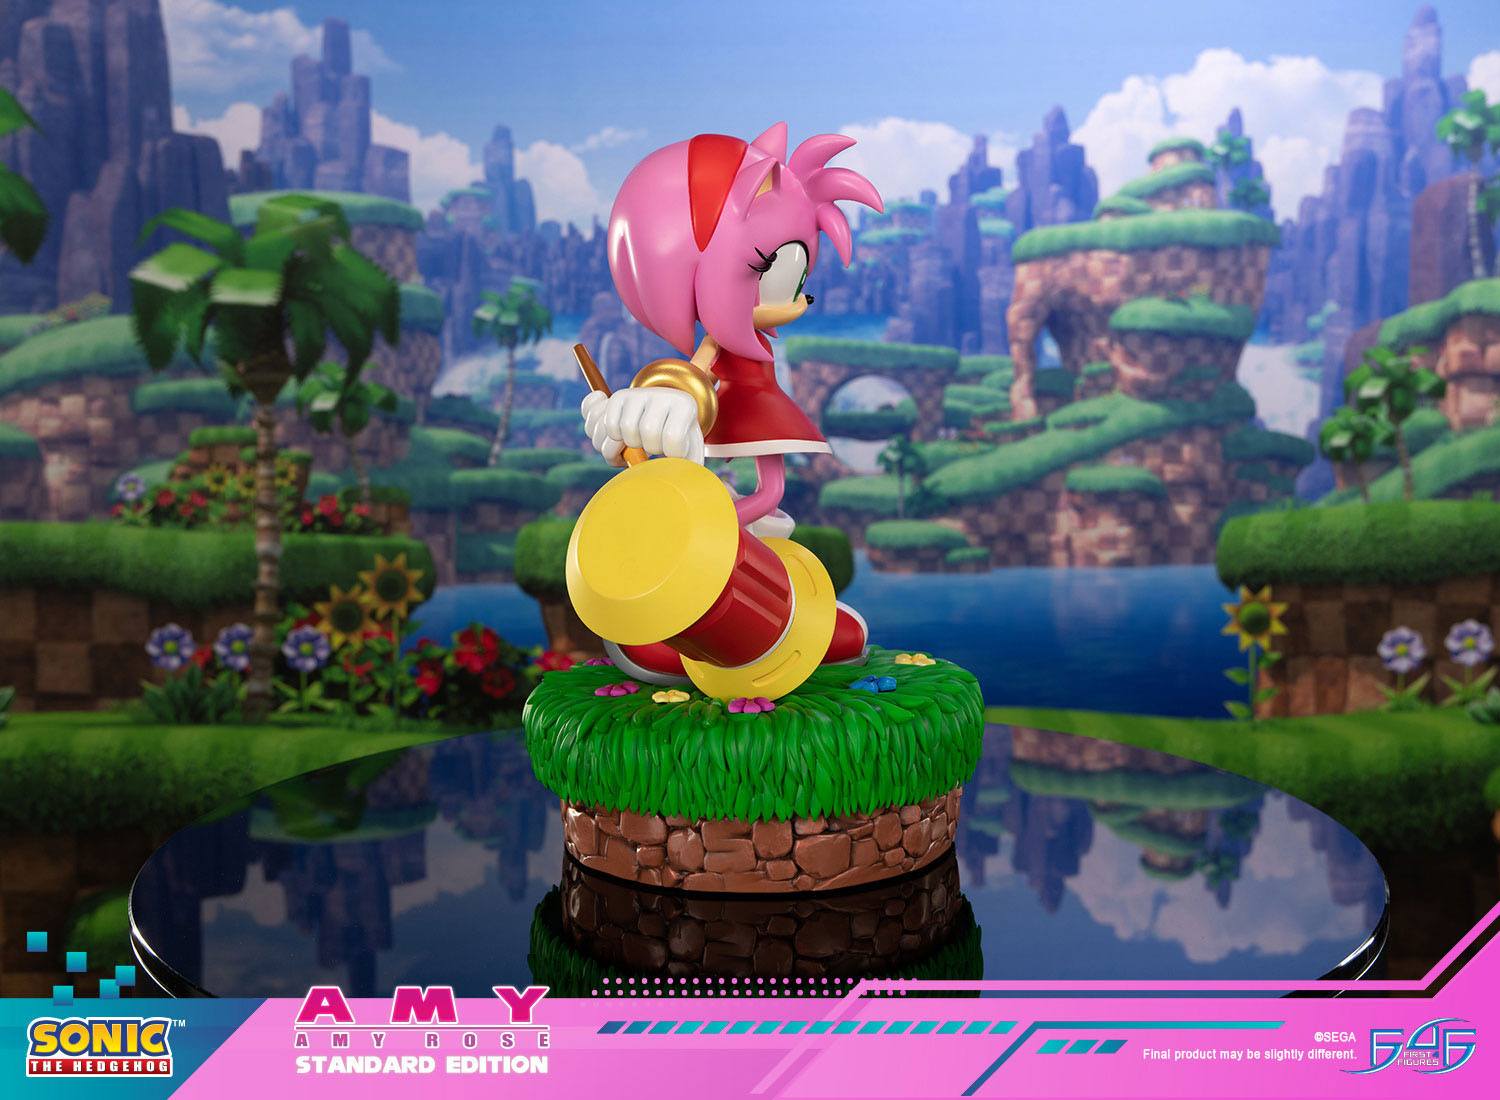 Estatua Sonic the Hedgehog Amy